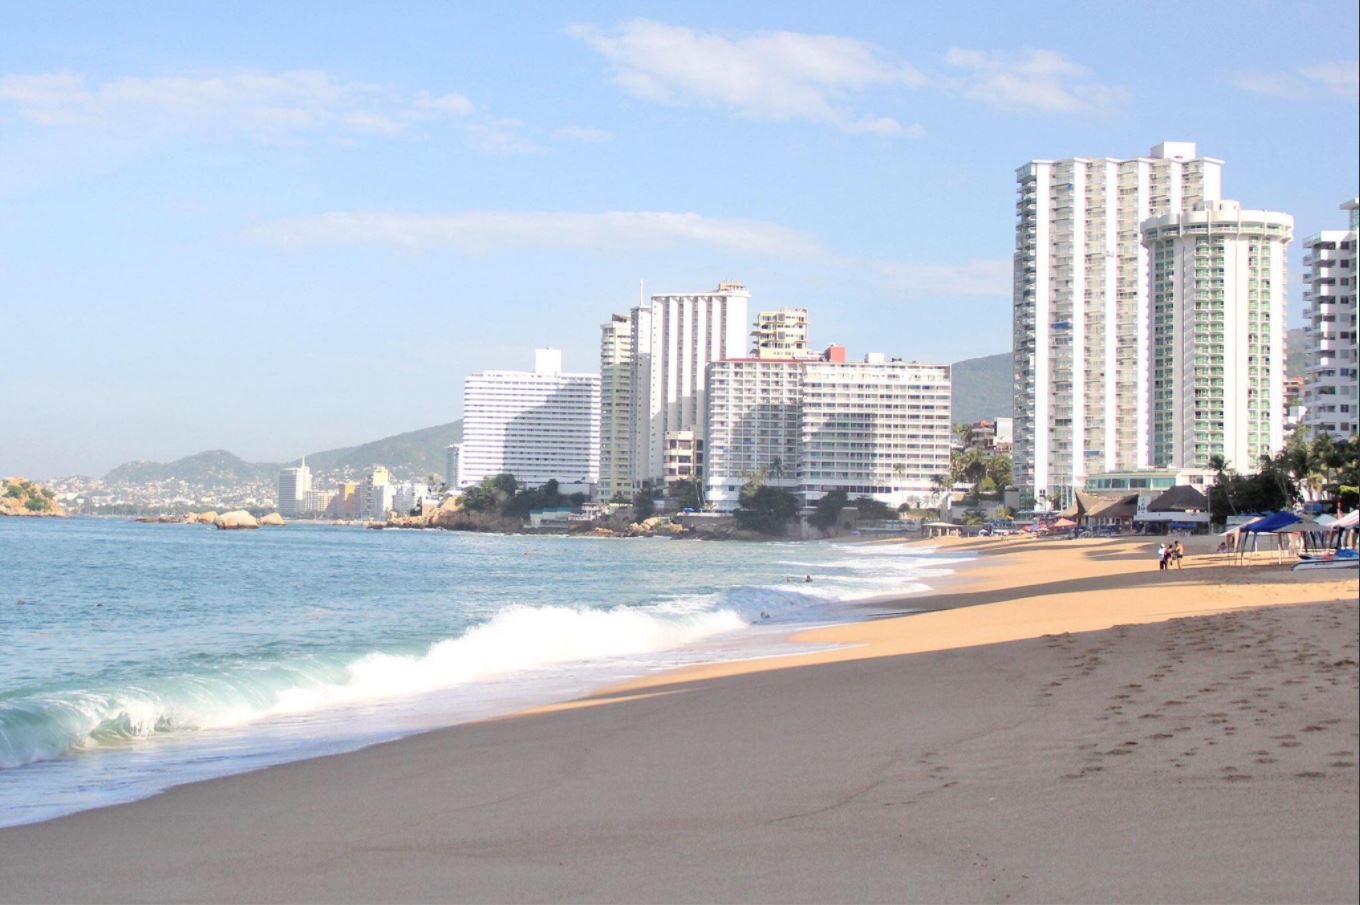 Playas de acapulco guerrero son aptas para los turistas